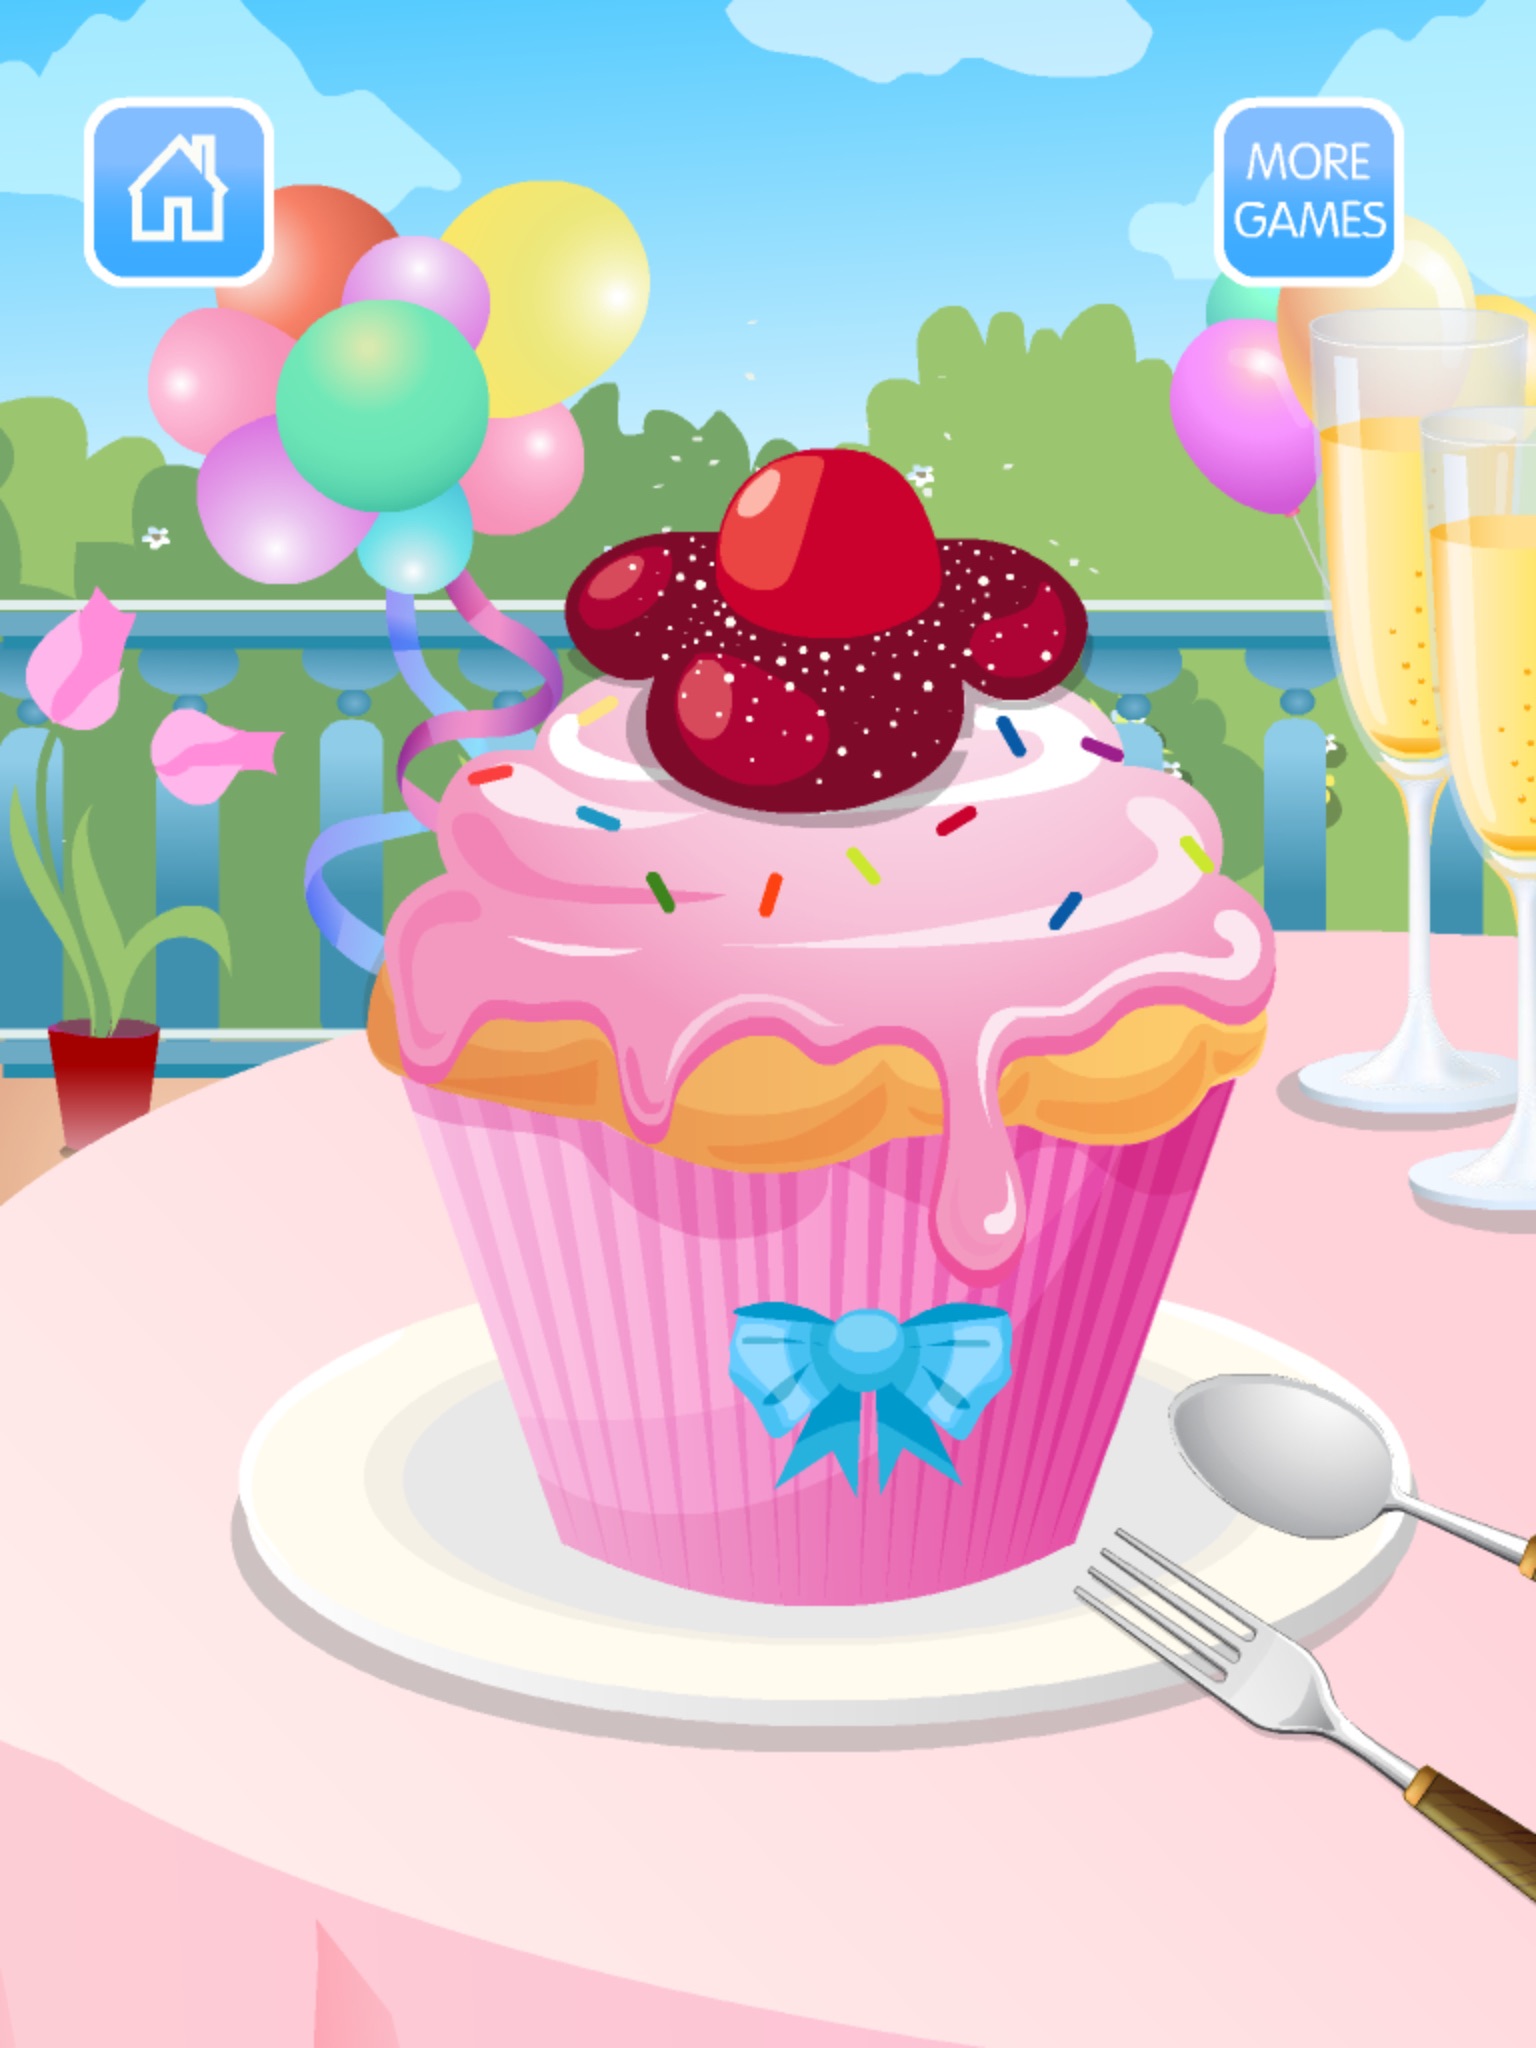 完美纸杯蛋糕大师hd - 最热门的蛋糕烹饪游戏!